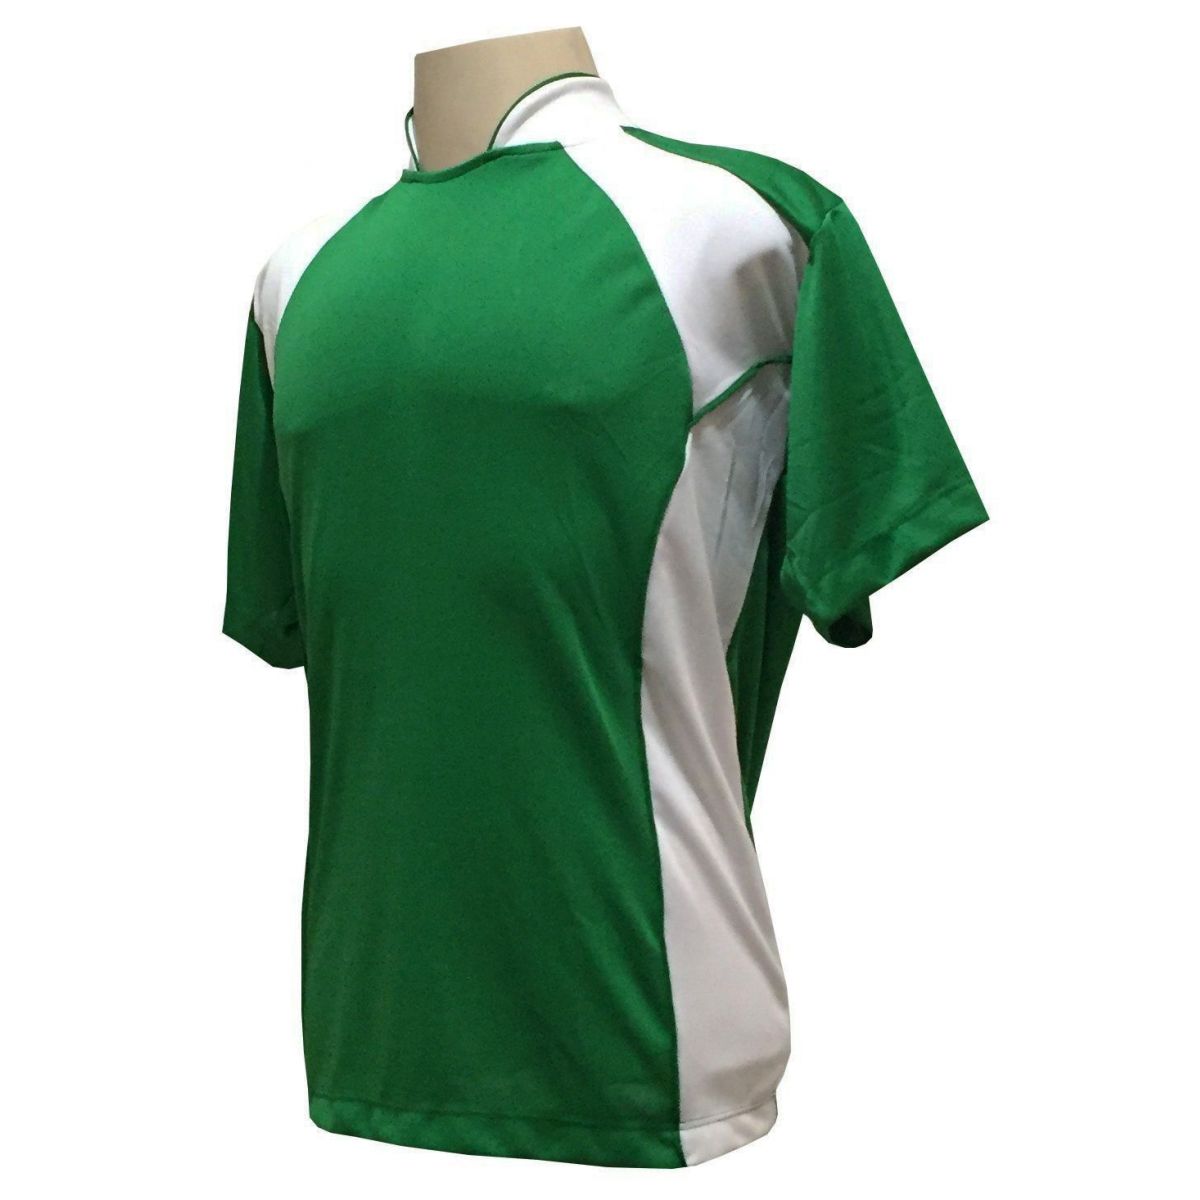 Uniforme Esportivo com 14 camisas modelo Suécia Verde/Branco + 14 calções modelo Madrid + 1 Goleiro + Brindes